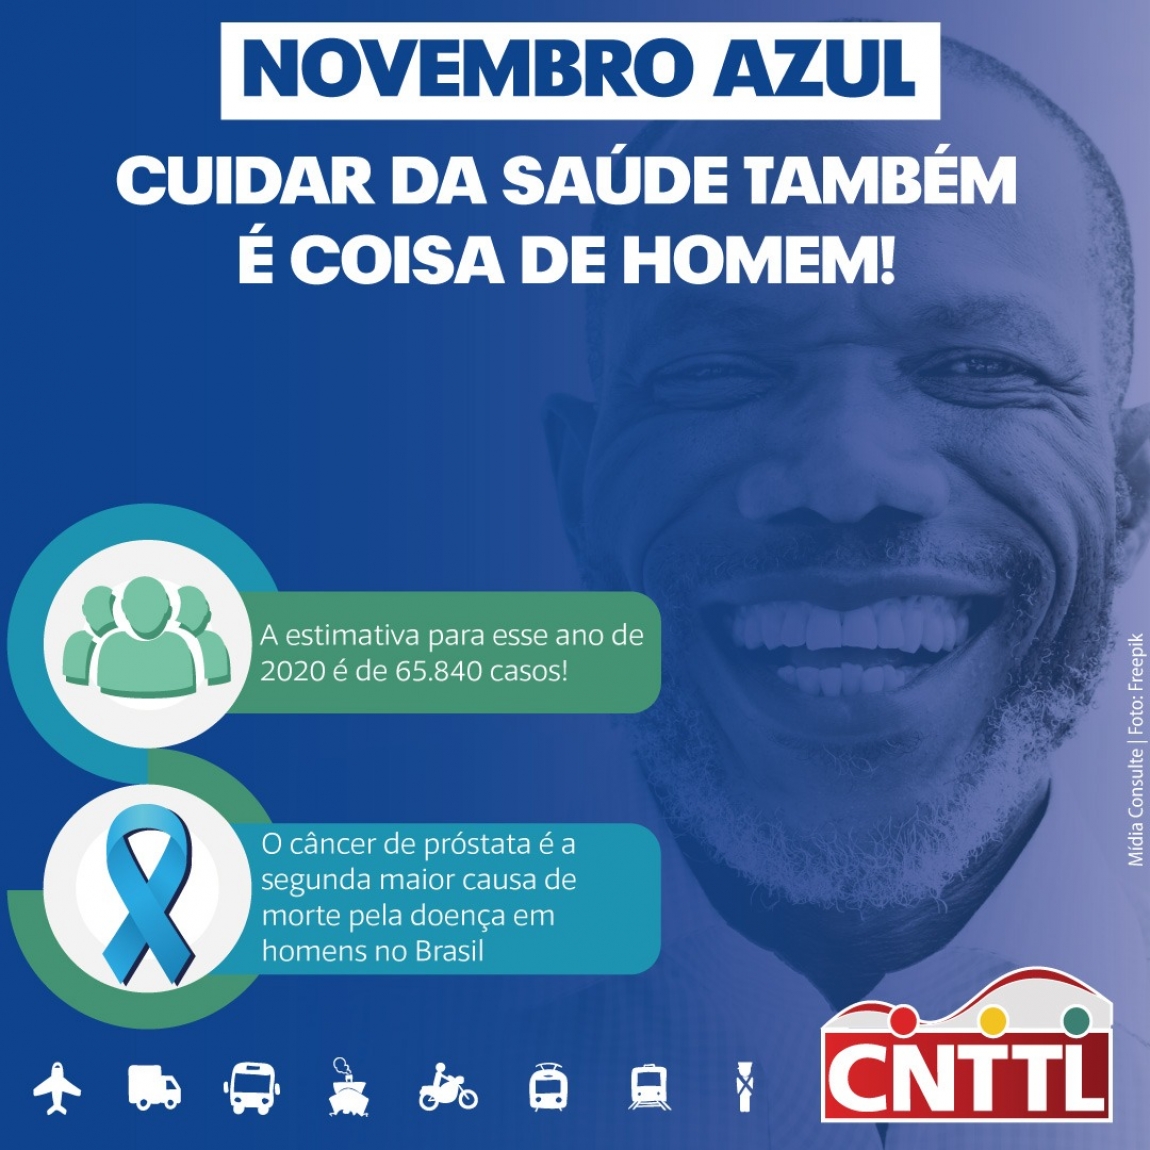 Imagem de CNTTL apoia Campanha Novembro Azul de combate ao câncer de próstata 